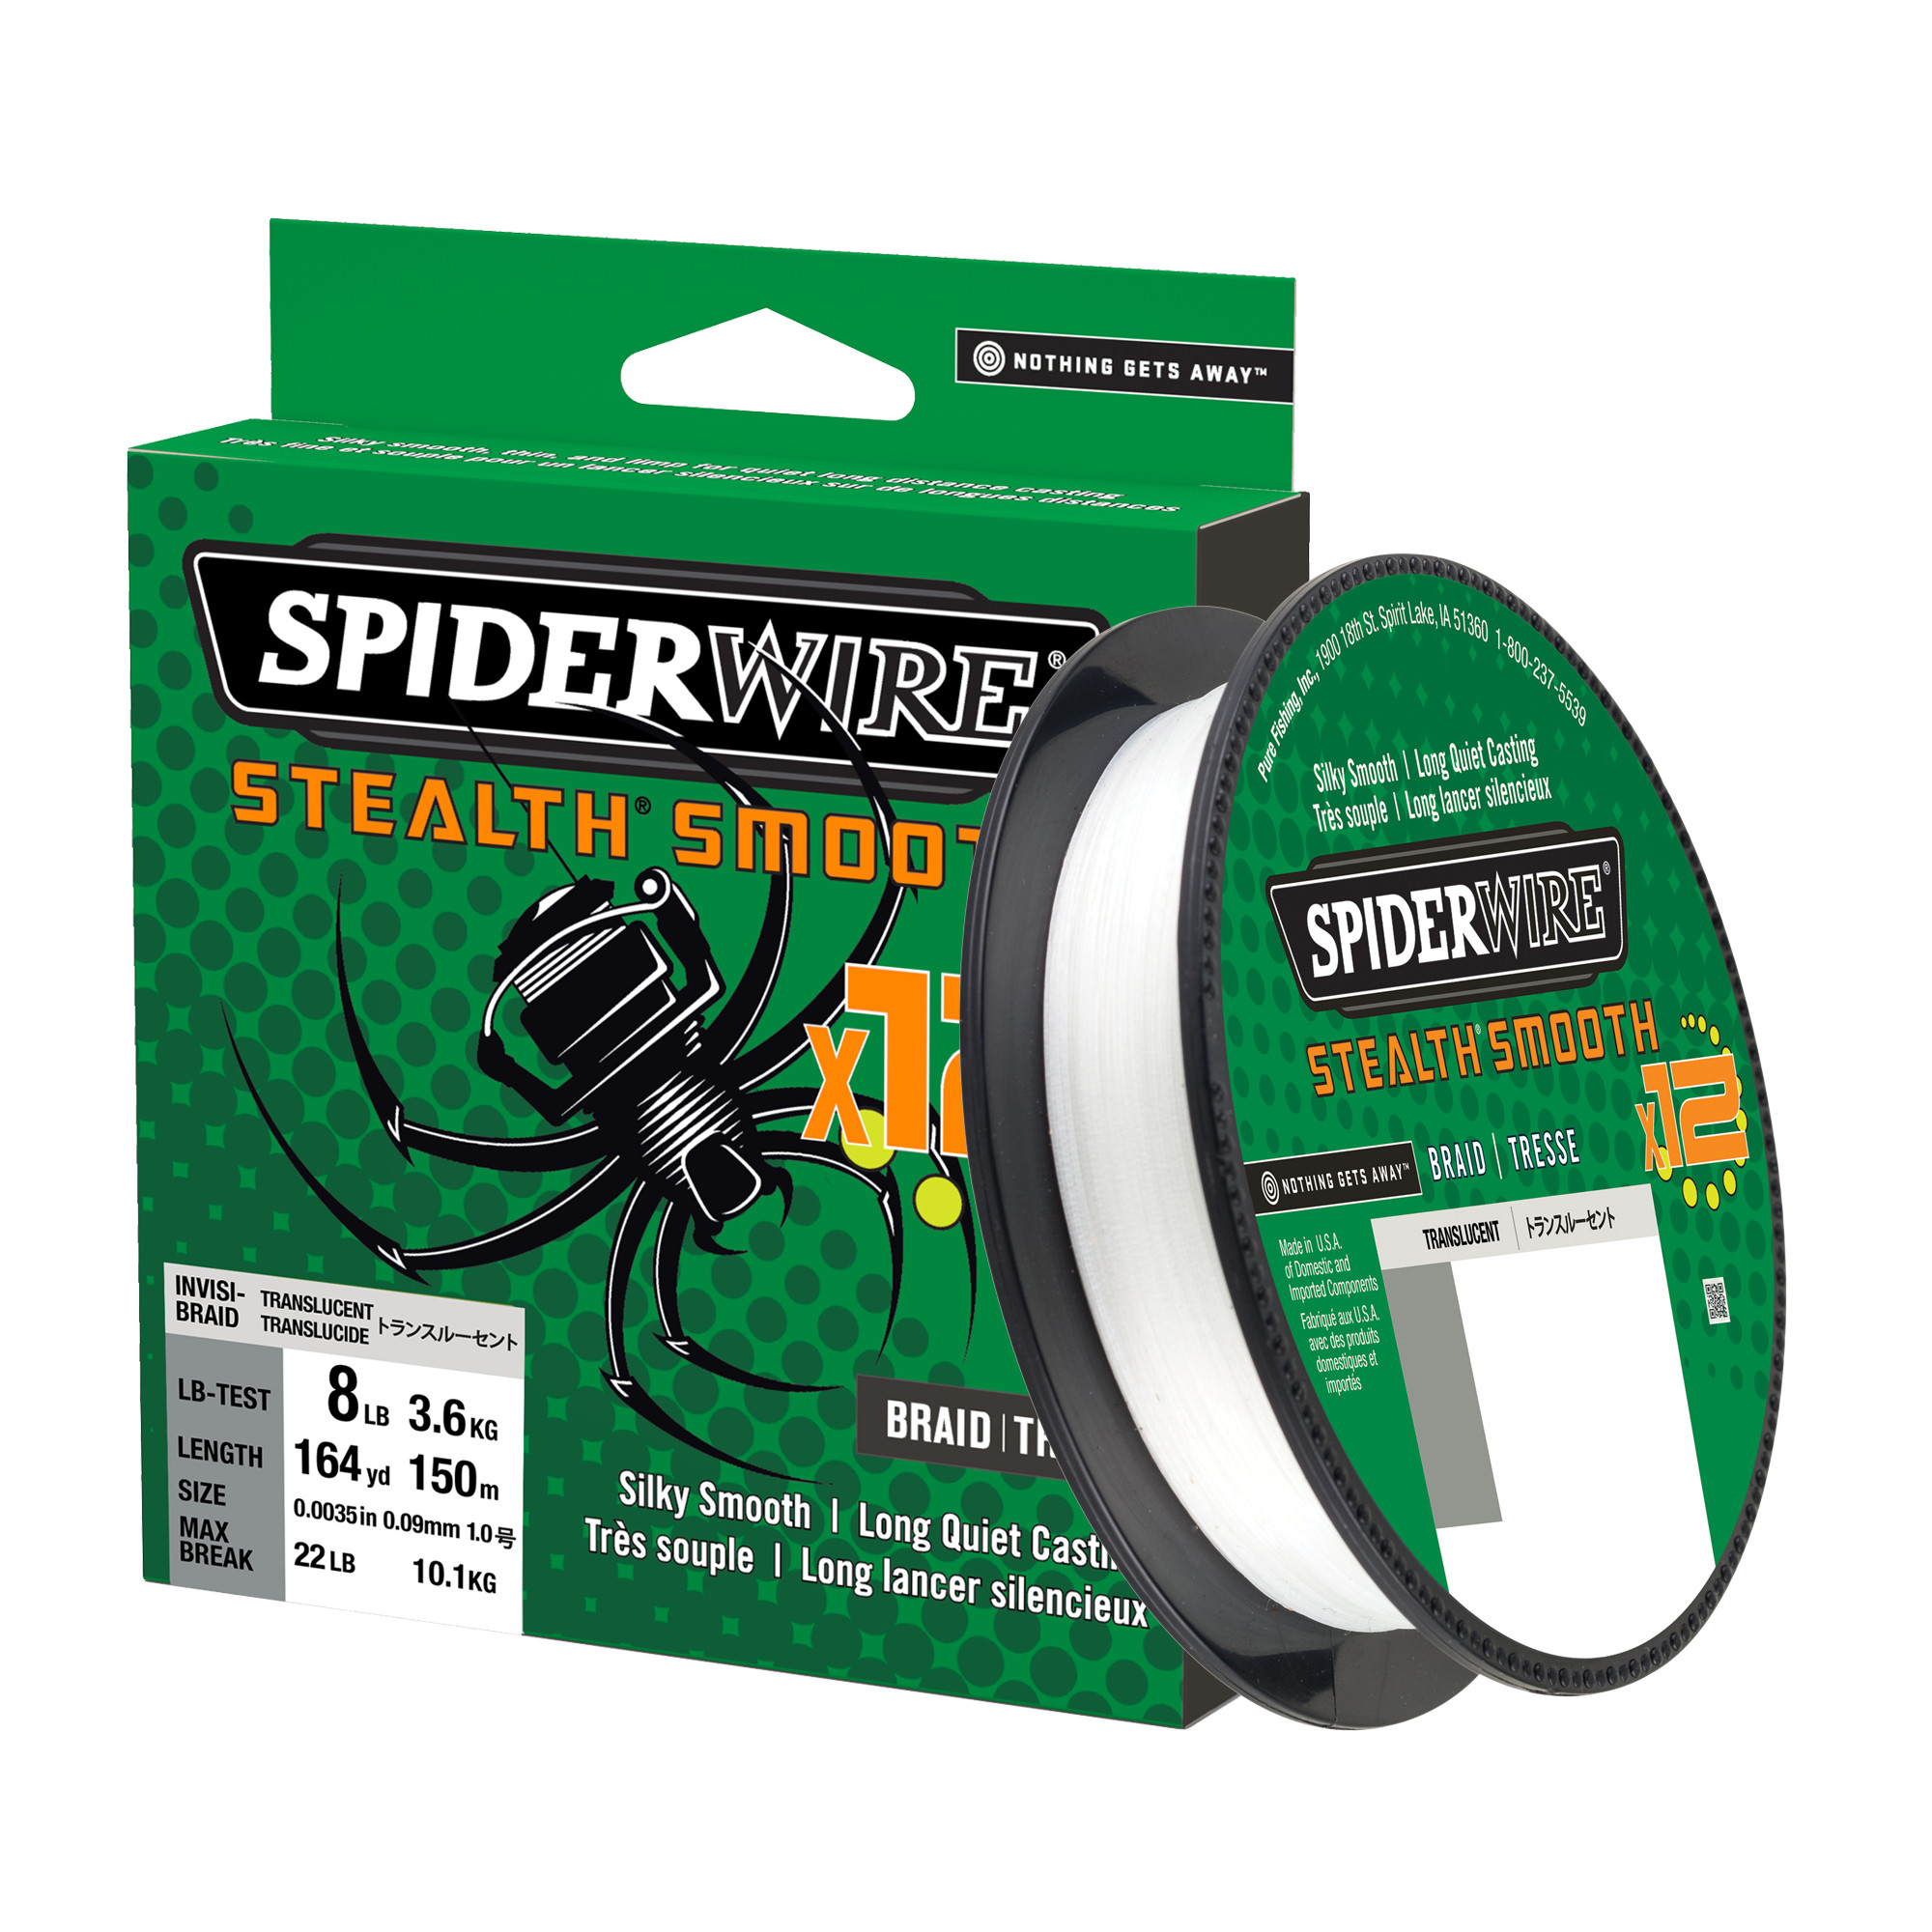 Spiderwire Stealth Smooth 12 0.39 Translucent